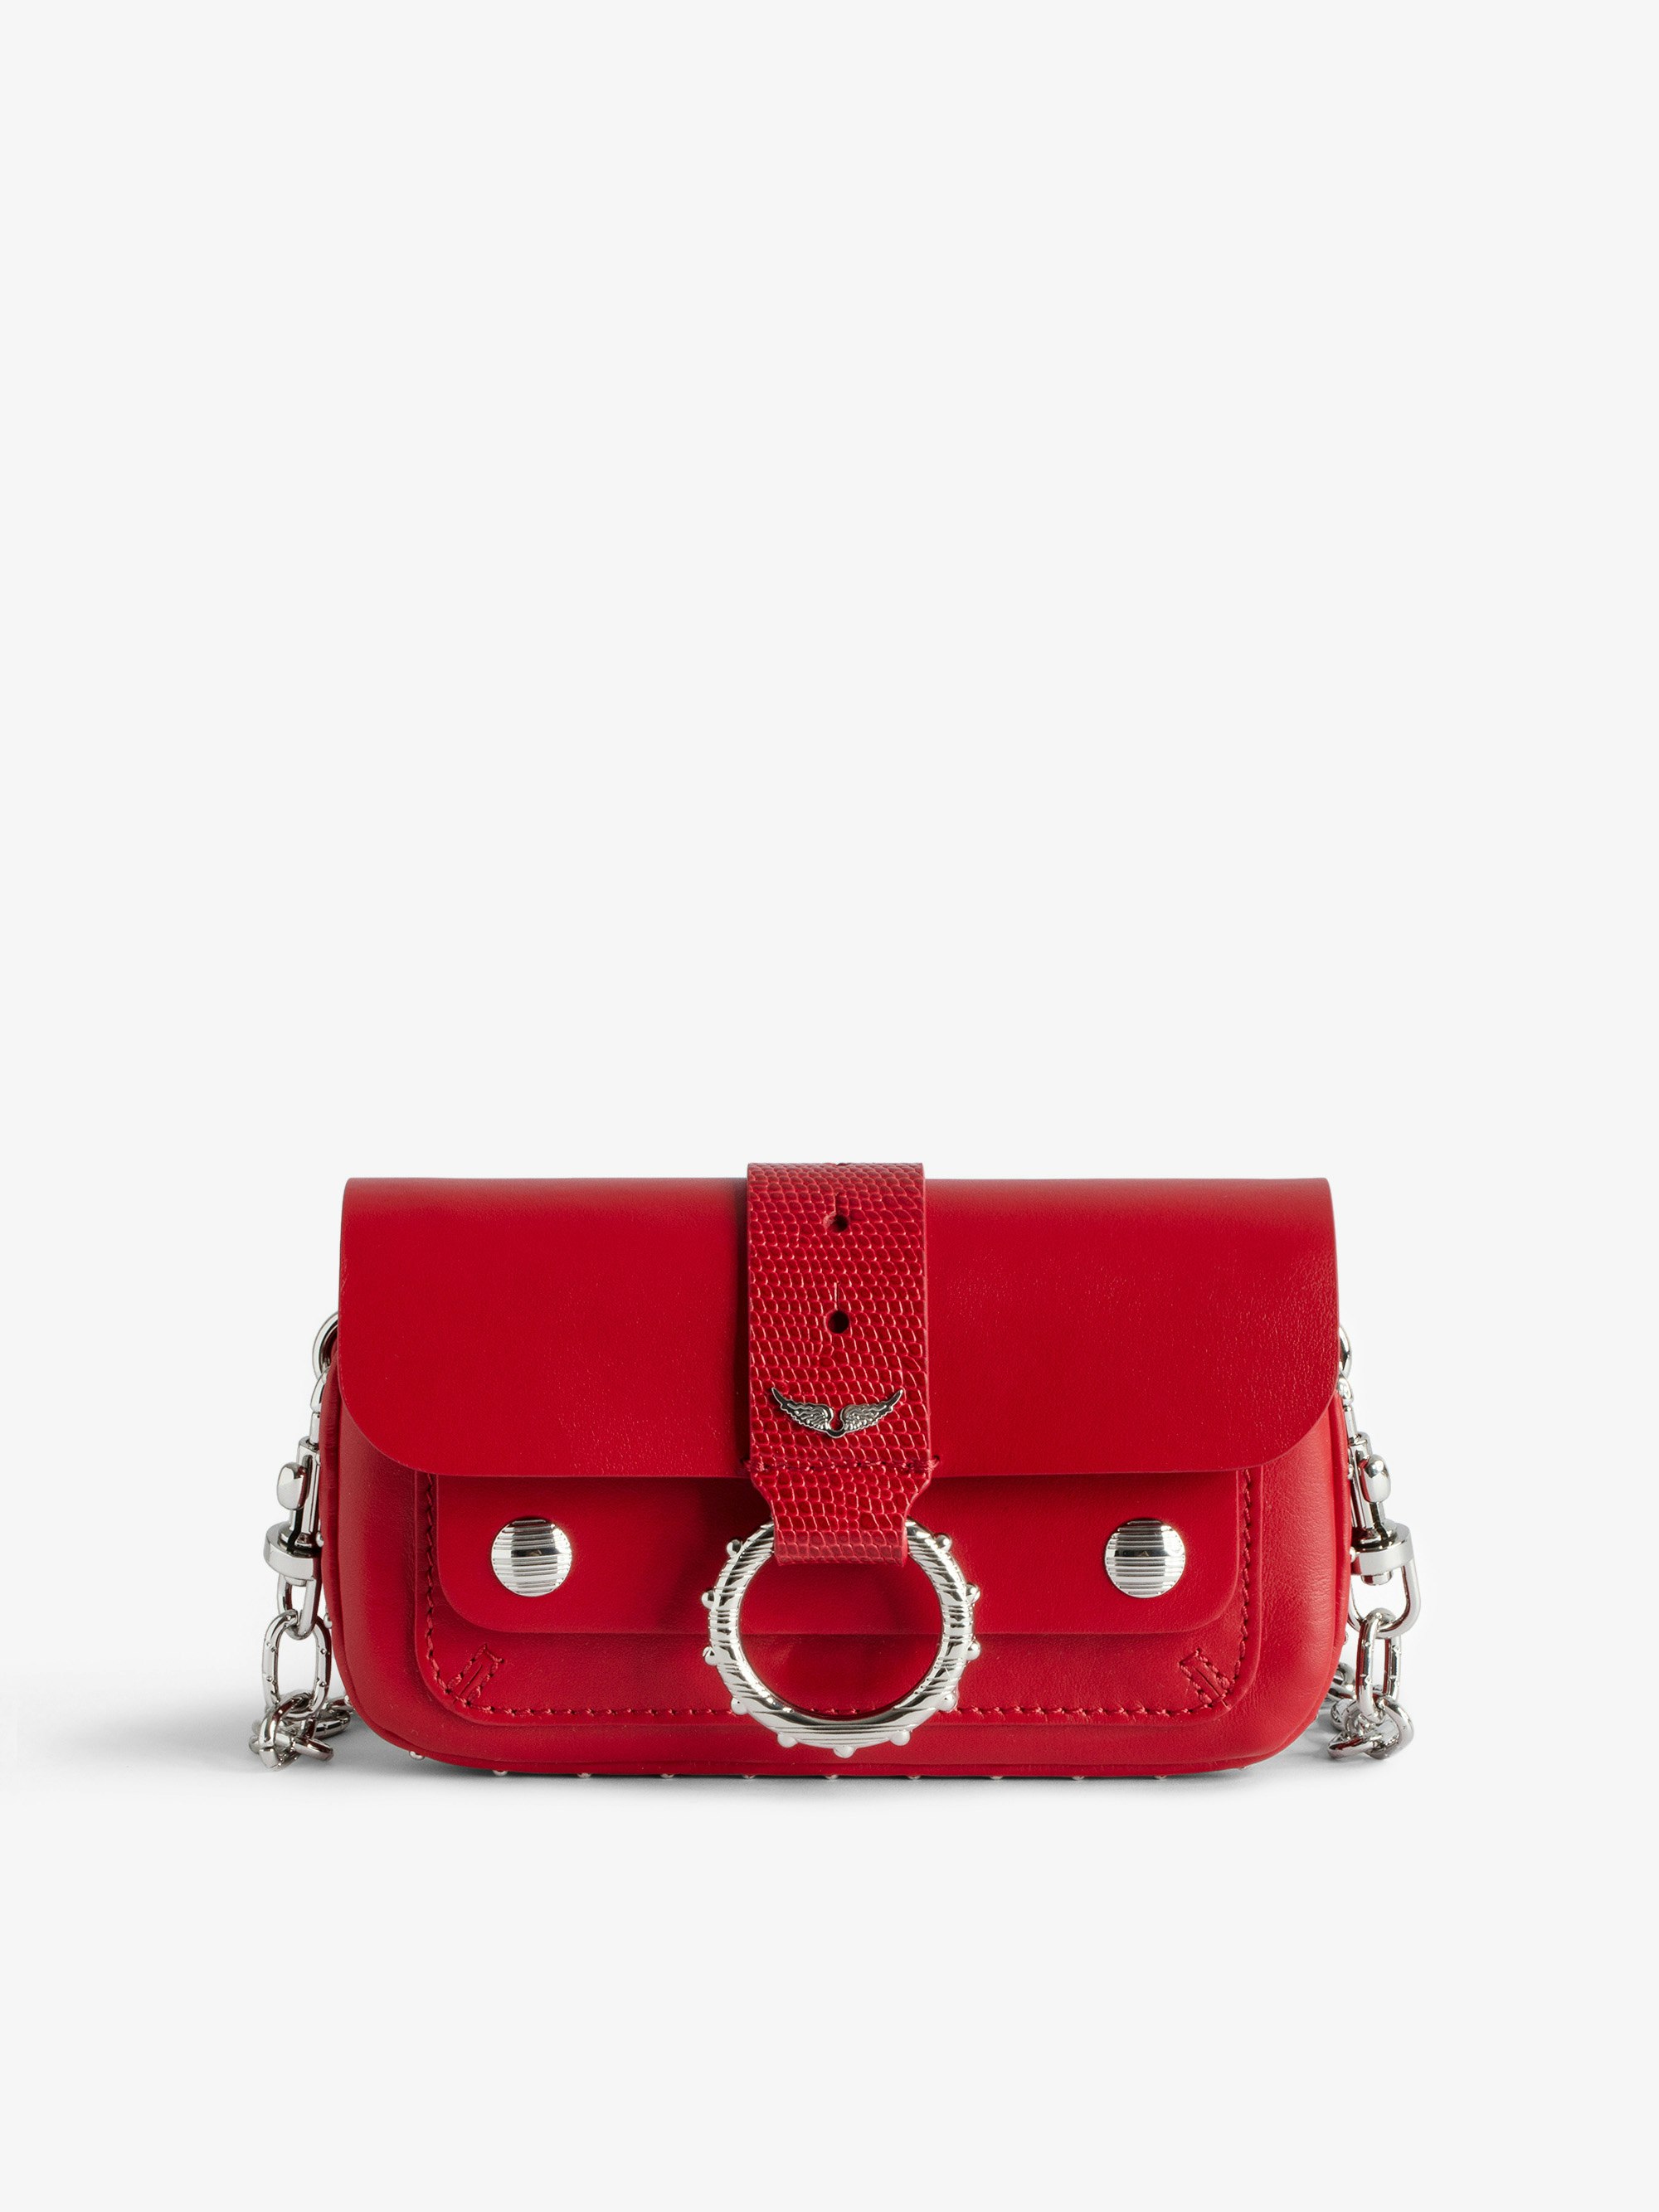 Sac Kate Wallet - Designed by Kate Moss for Zadig&Voltaire.  Mini sac en cuir lisse rouge à chaîne en métal et passant en cuir embossé effet iguane.